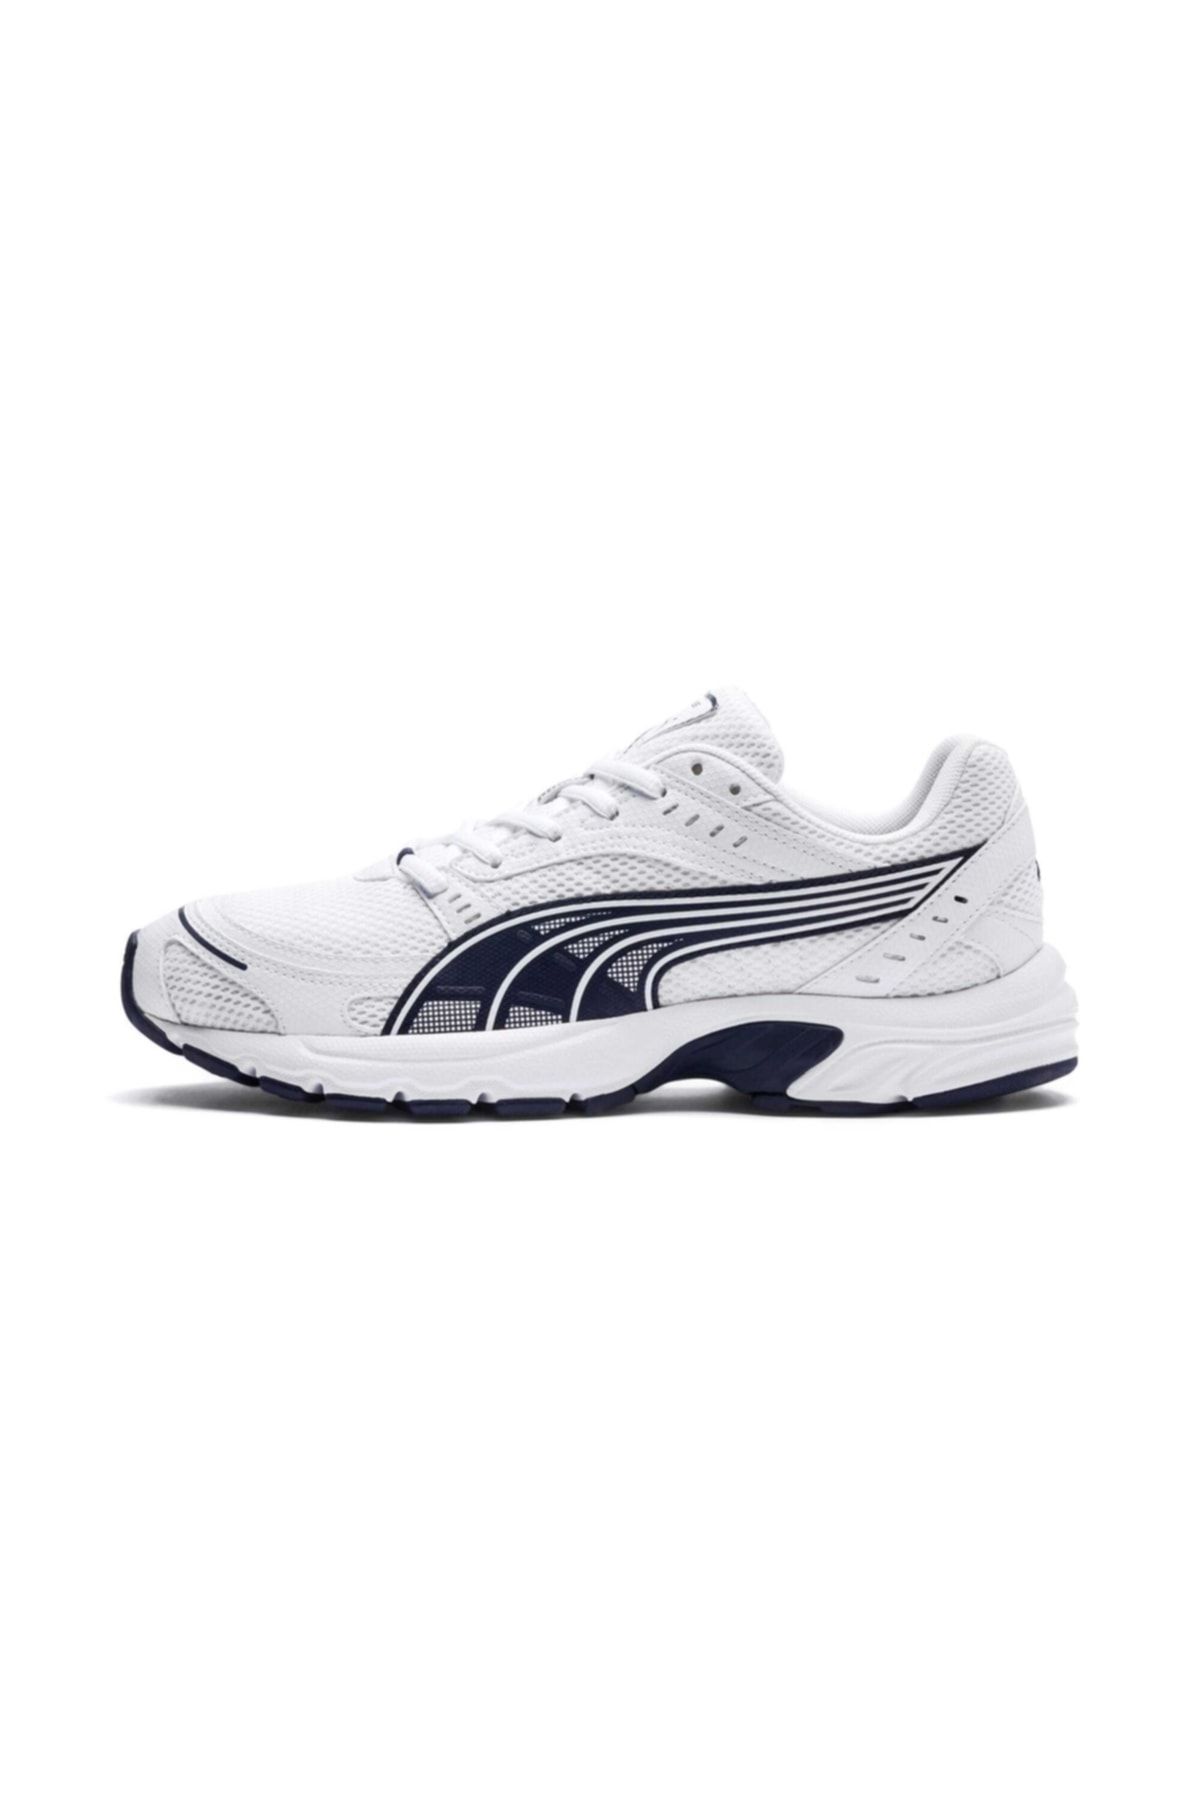 Puma AXIS Beyaz Erkek Koşu Ayakkabısı 100407793